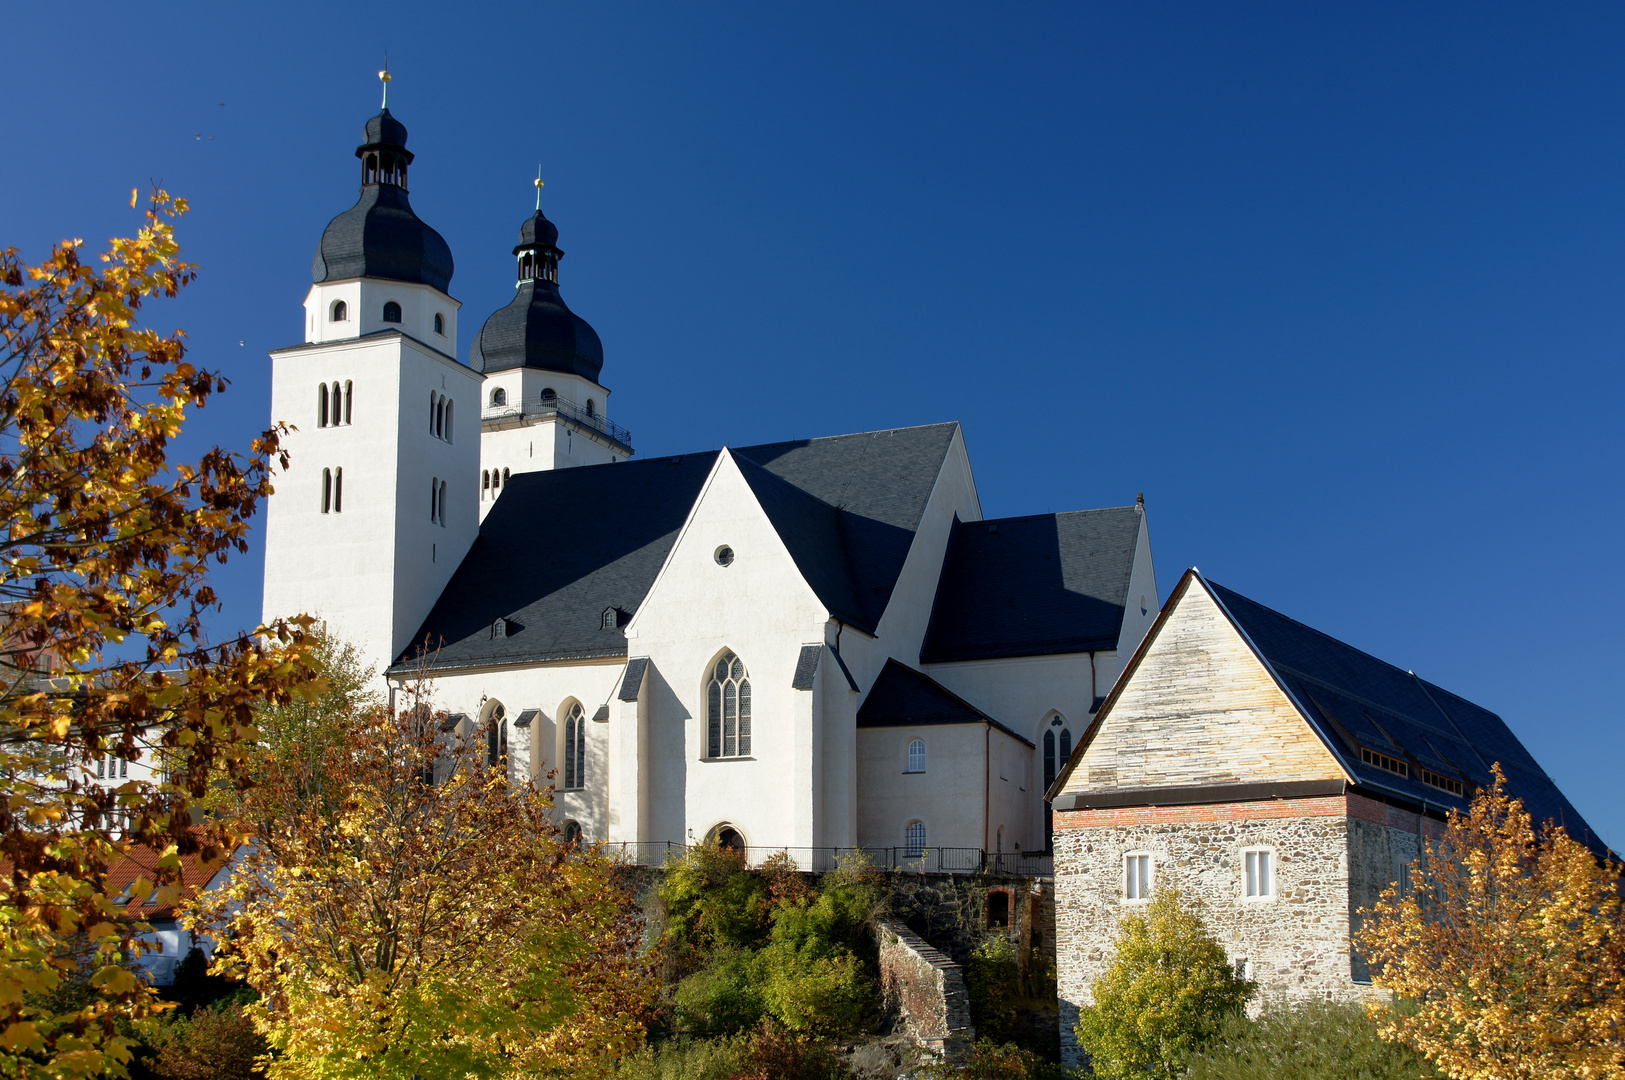 St. Johanniskirche und Komturhof - älteste Gebäude der Stadt Plauen